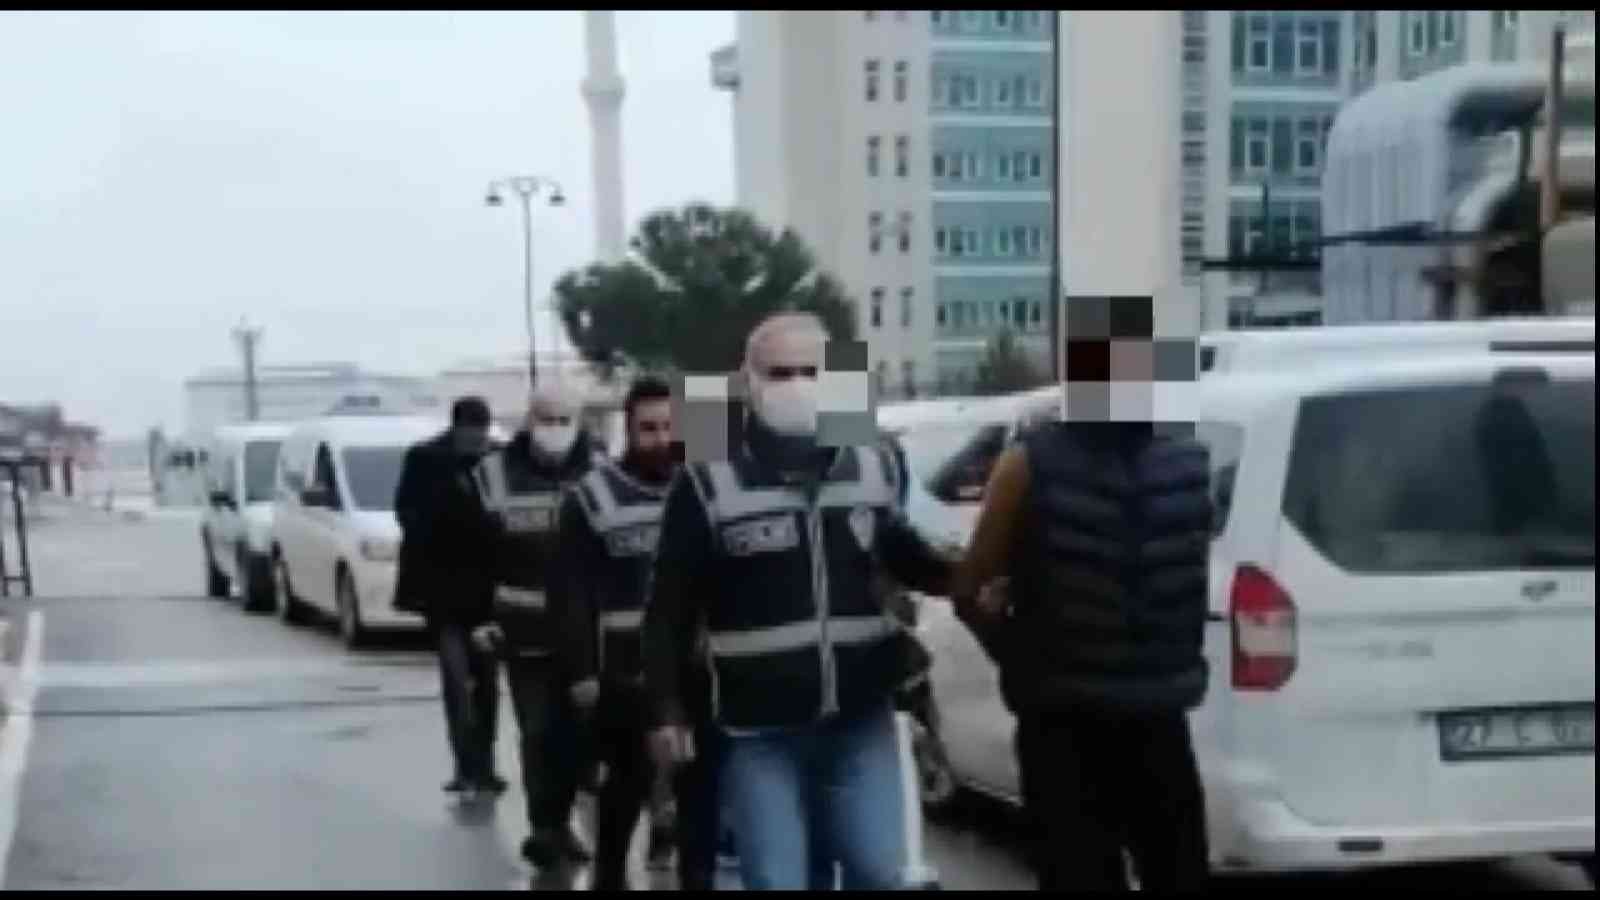 Gaziantep’te 11 hırsız suçüstü yakalandı #gaziantep